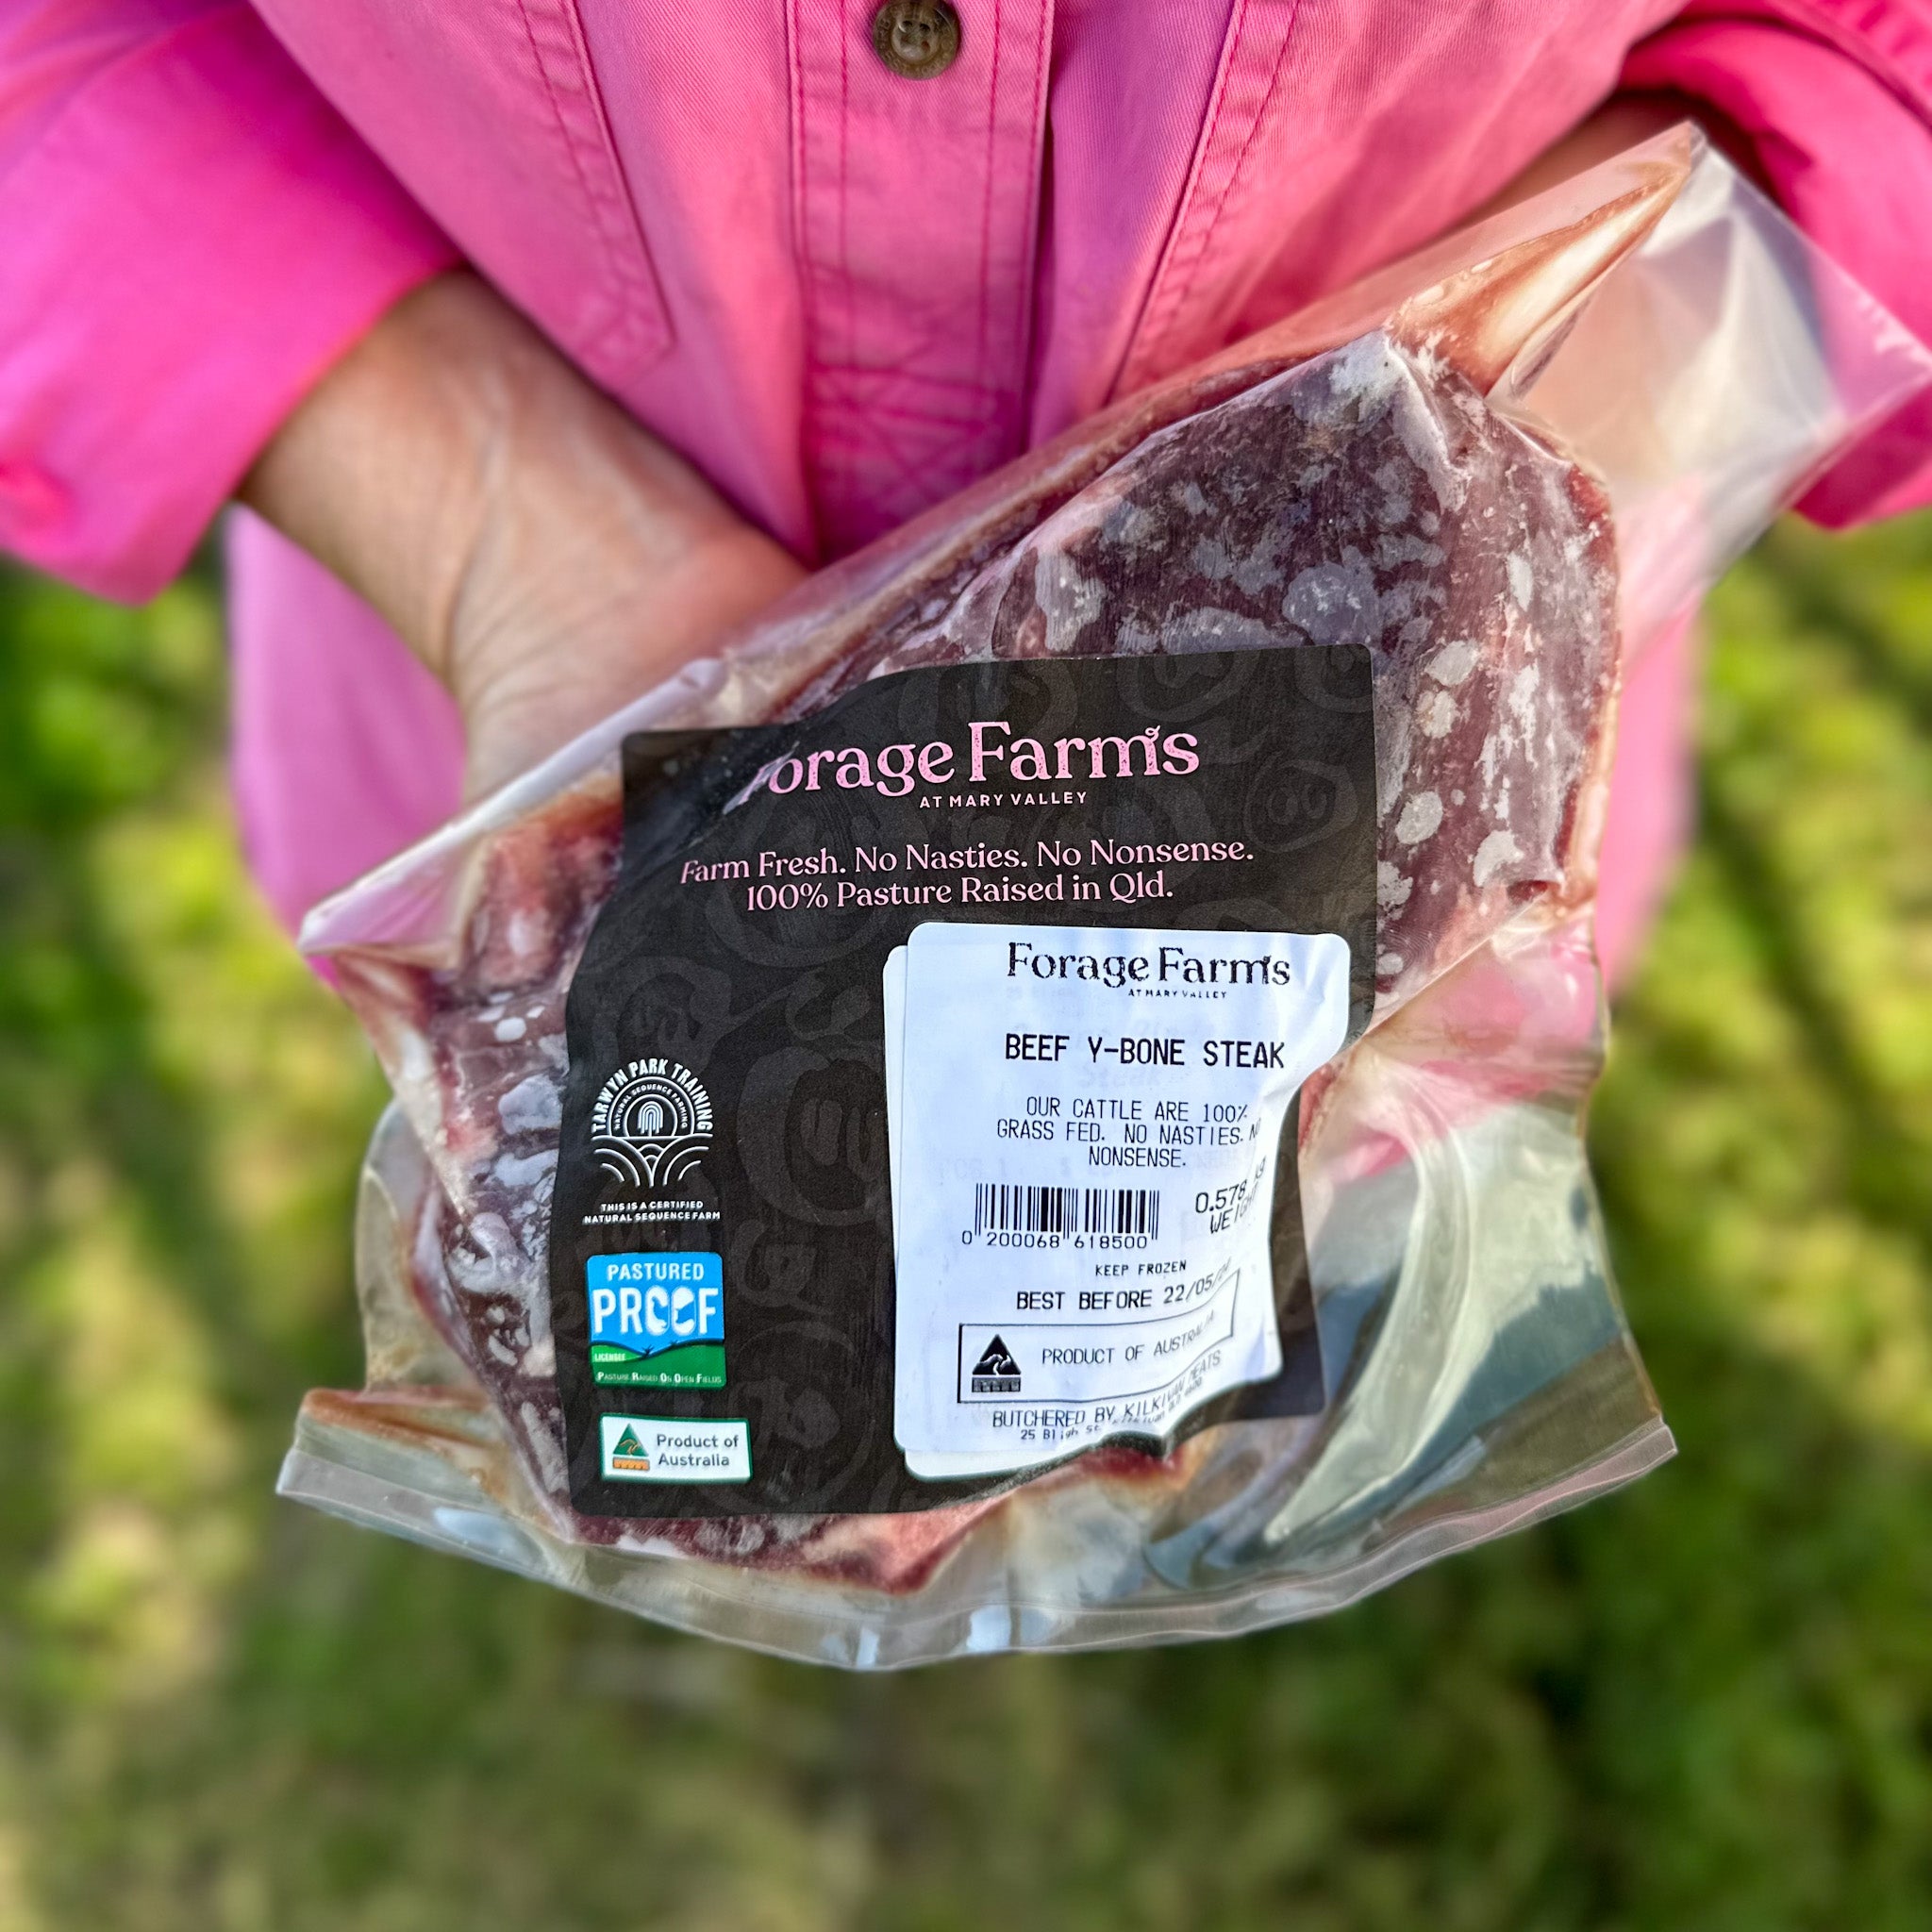 Forage Farms Grass Fed & Finished Beef Y-Bone Steak